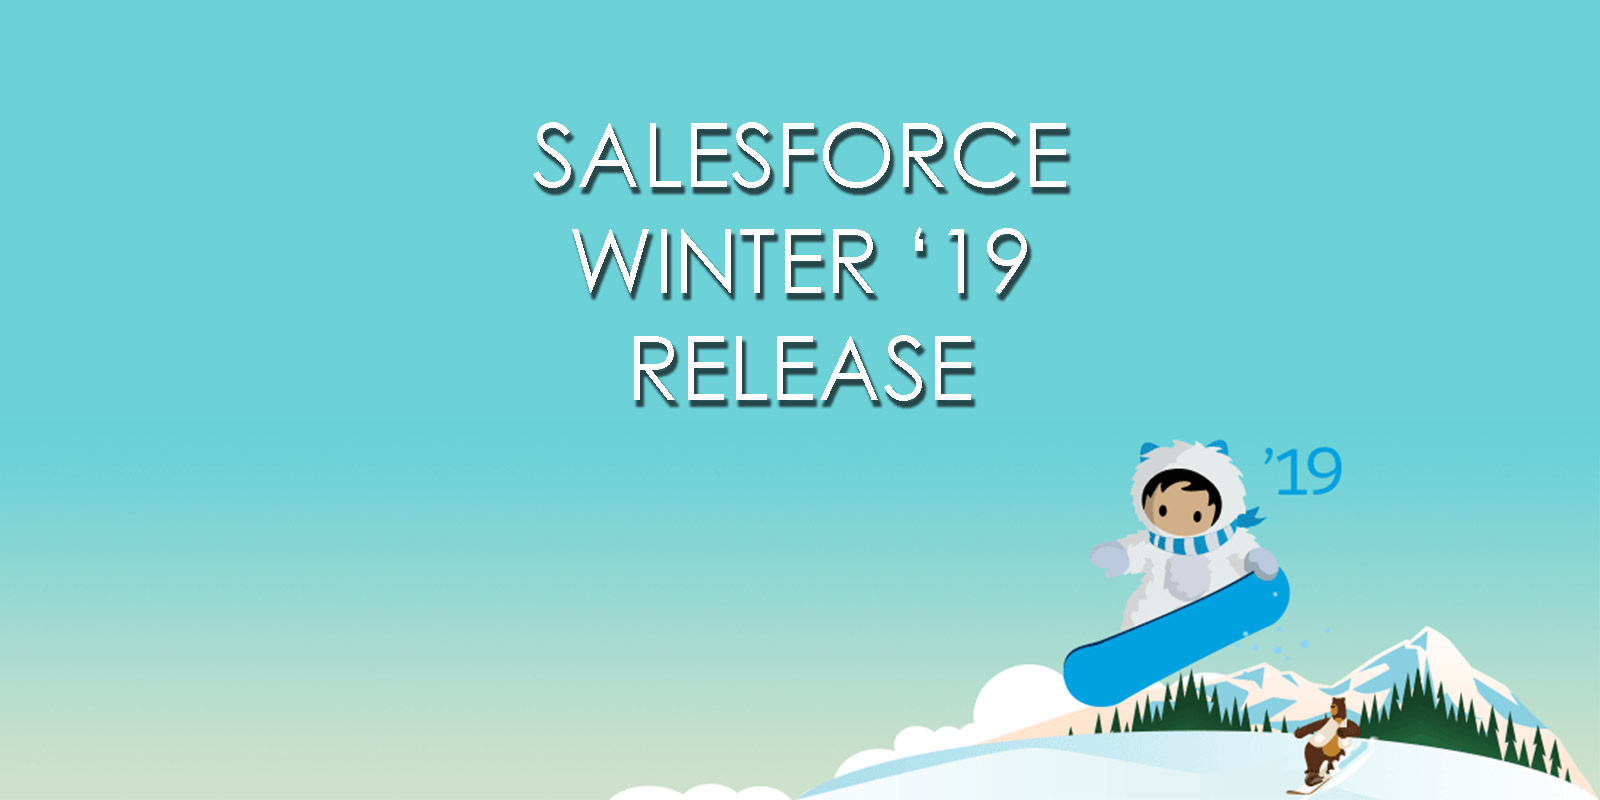 Salesforce Winter 19 Release